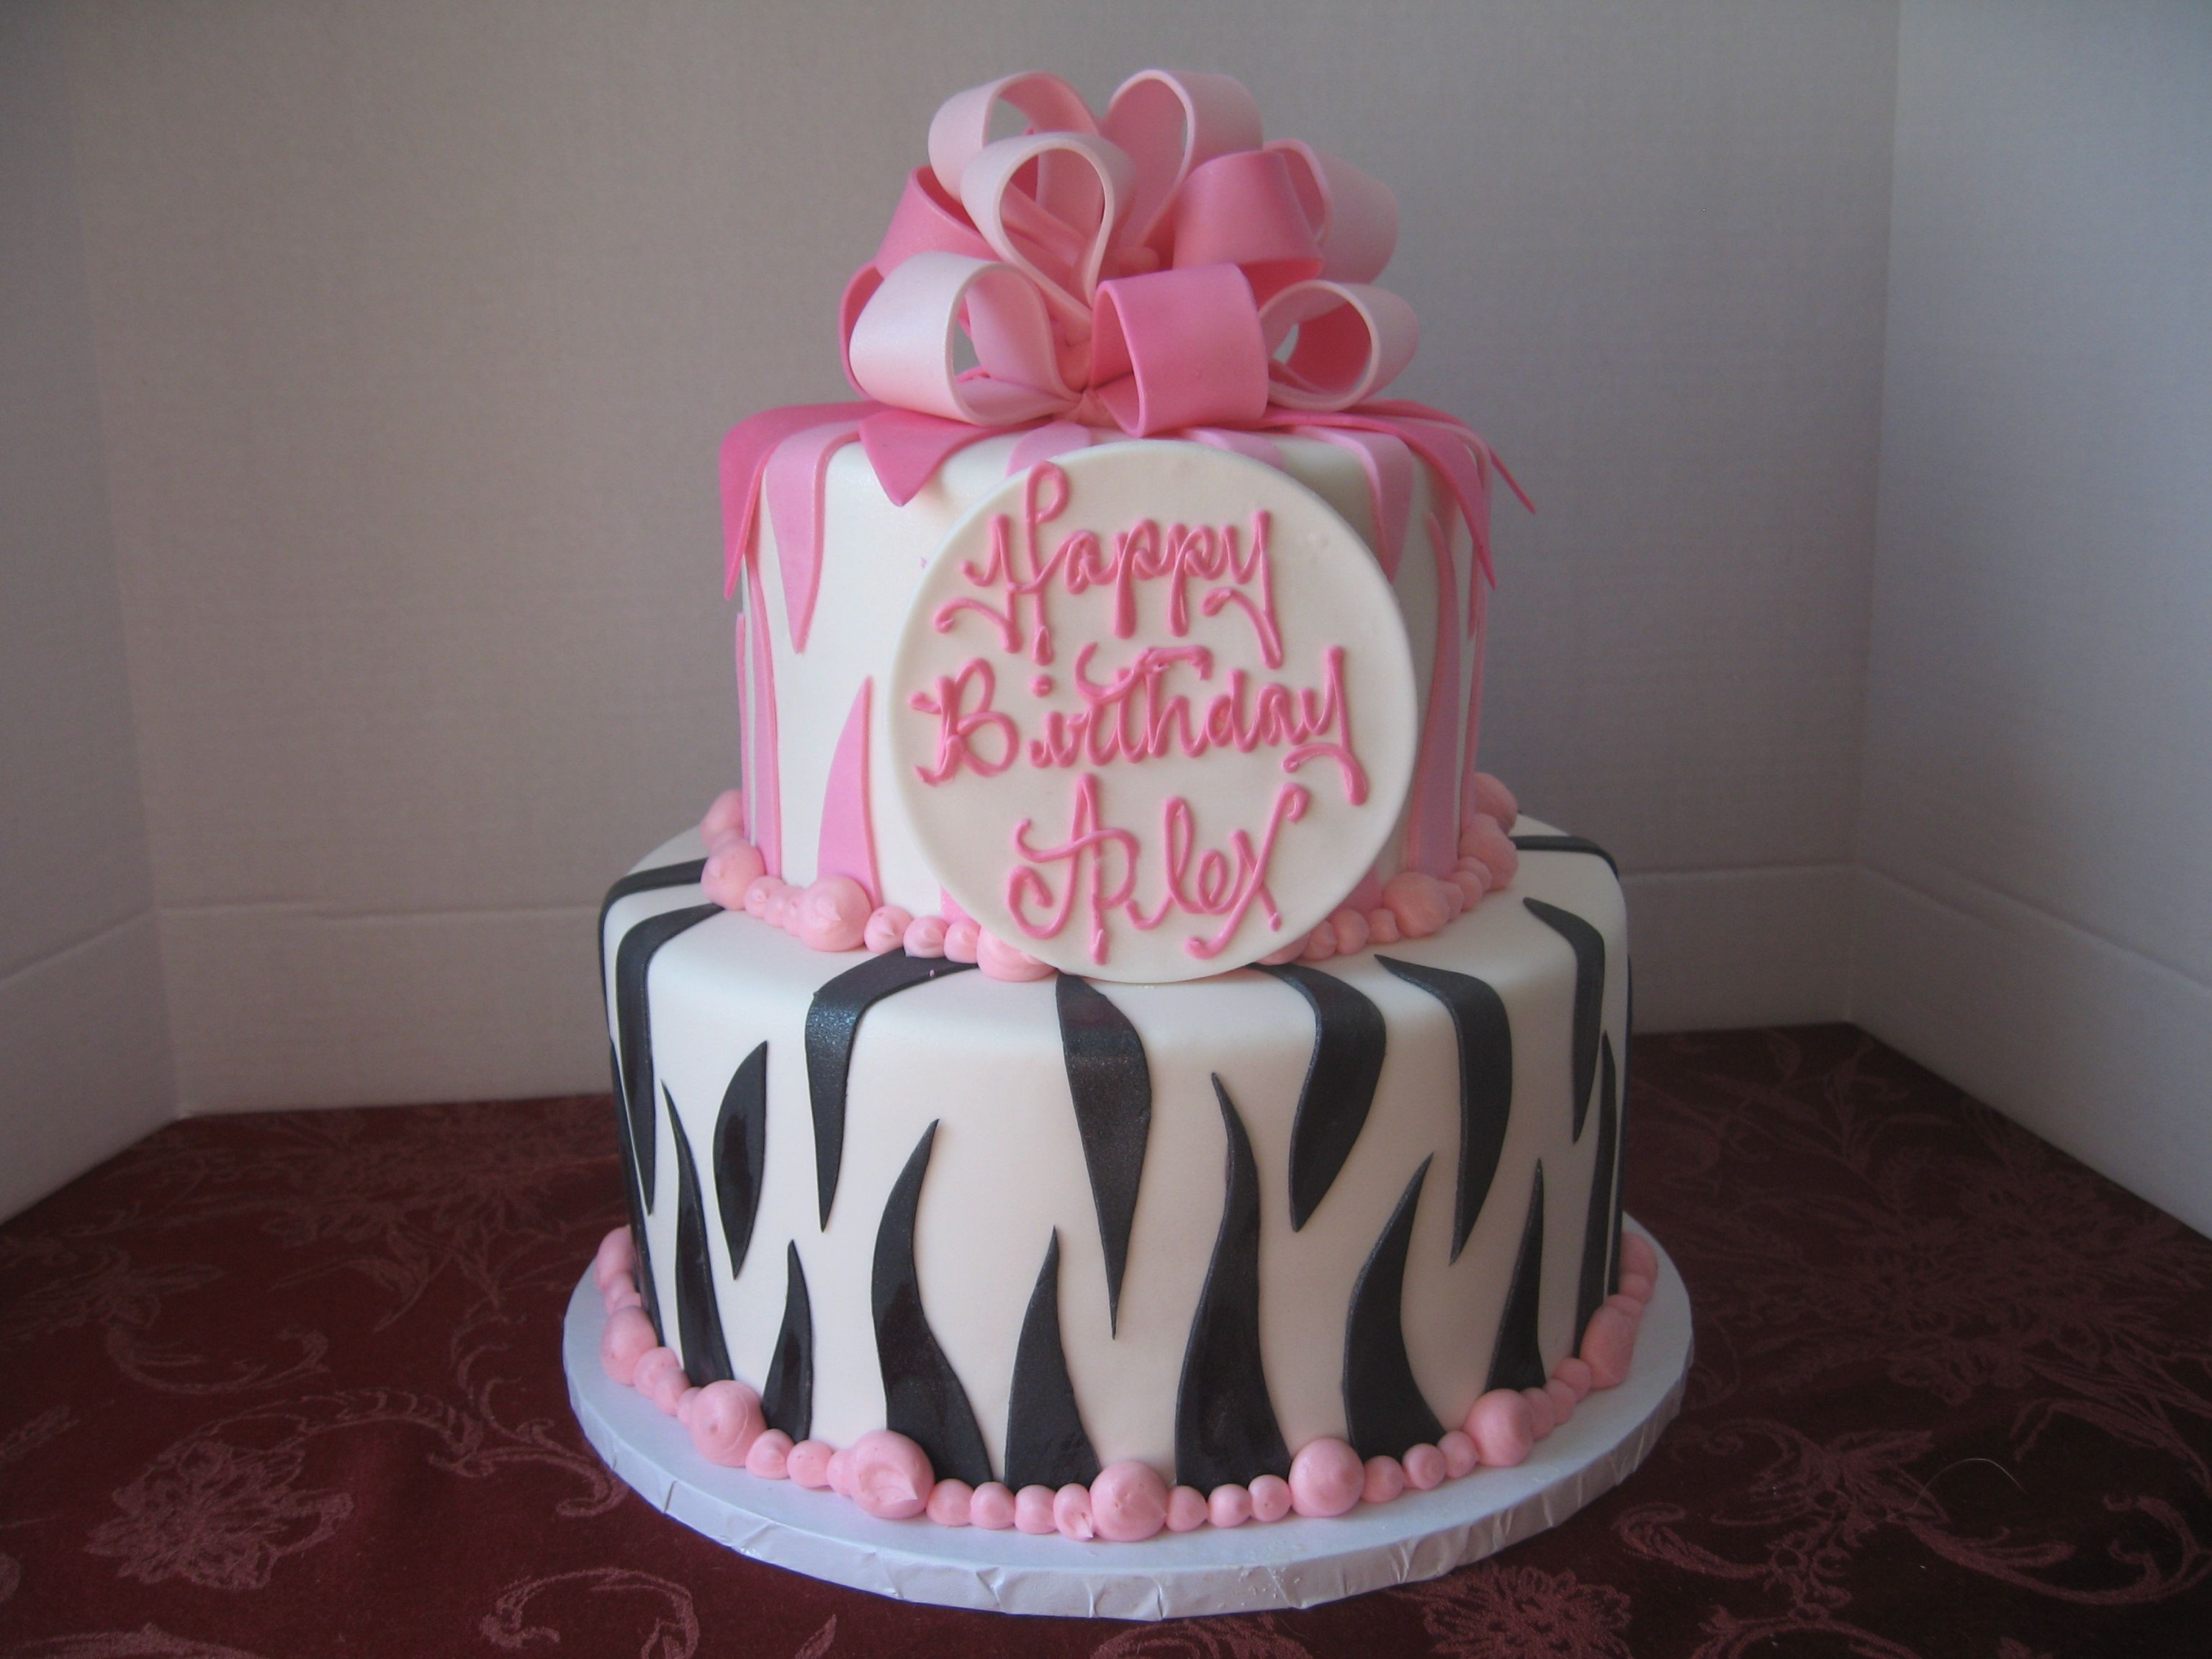 Raleys Wedding Cakes
 Zebra Print Birthday Cake My Cakes Pinterest Zebra Print